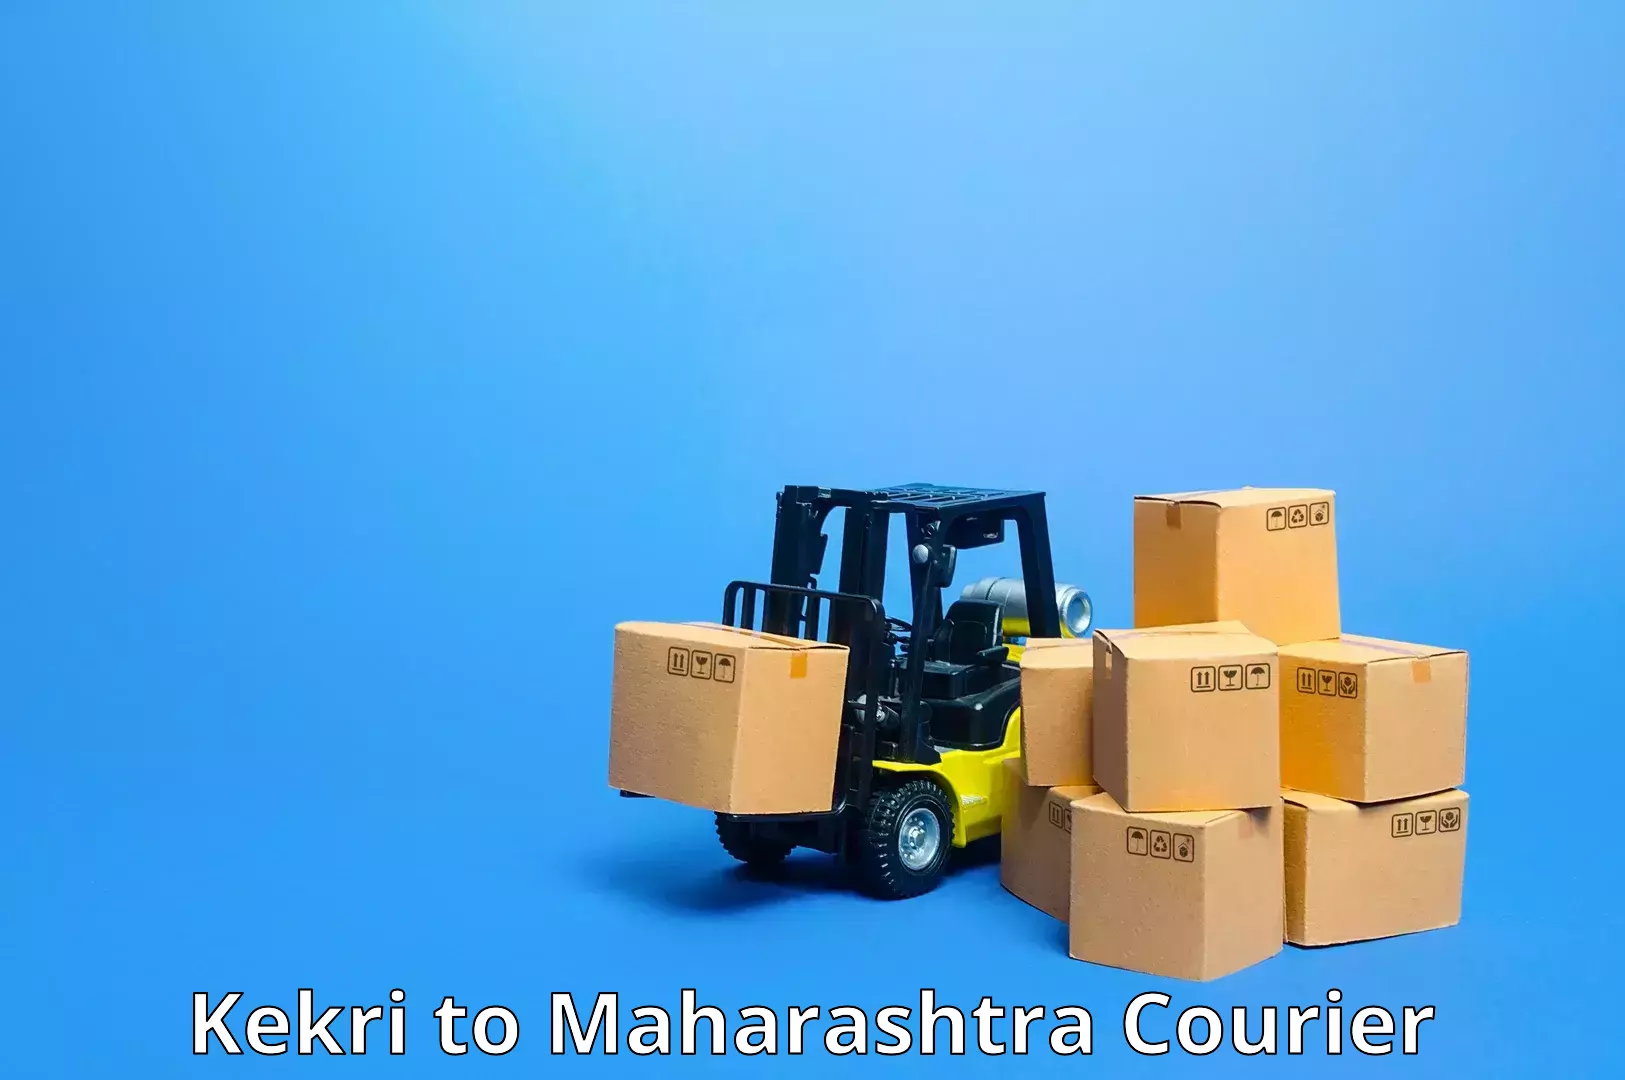 Customizable delivery plans Kekri to Maharashtra